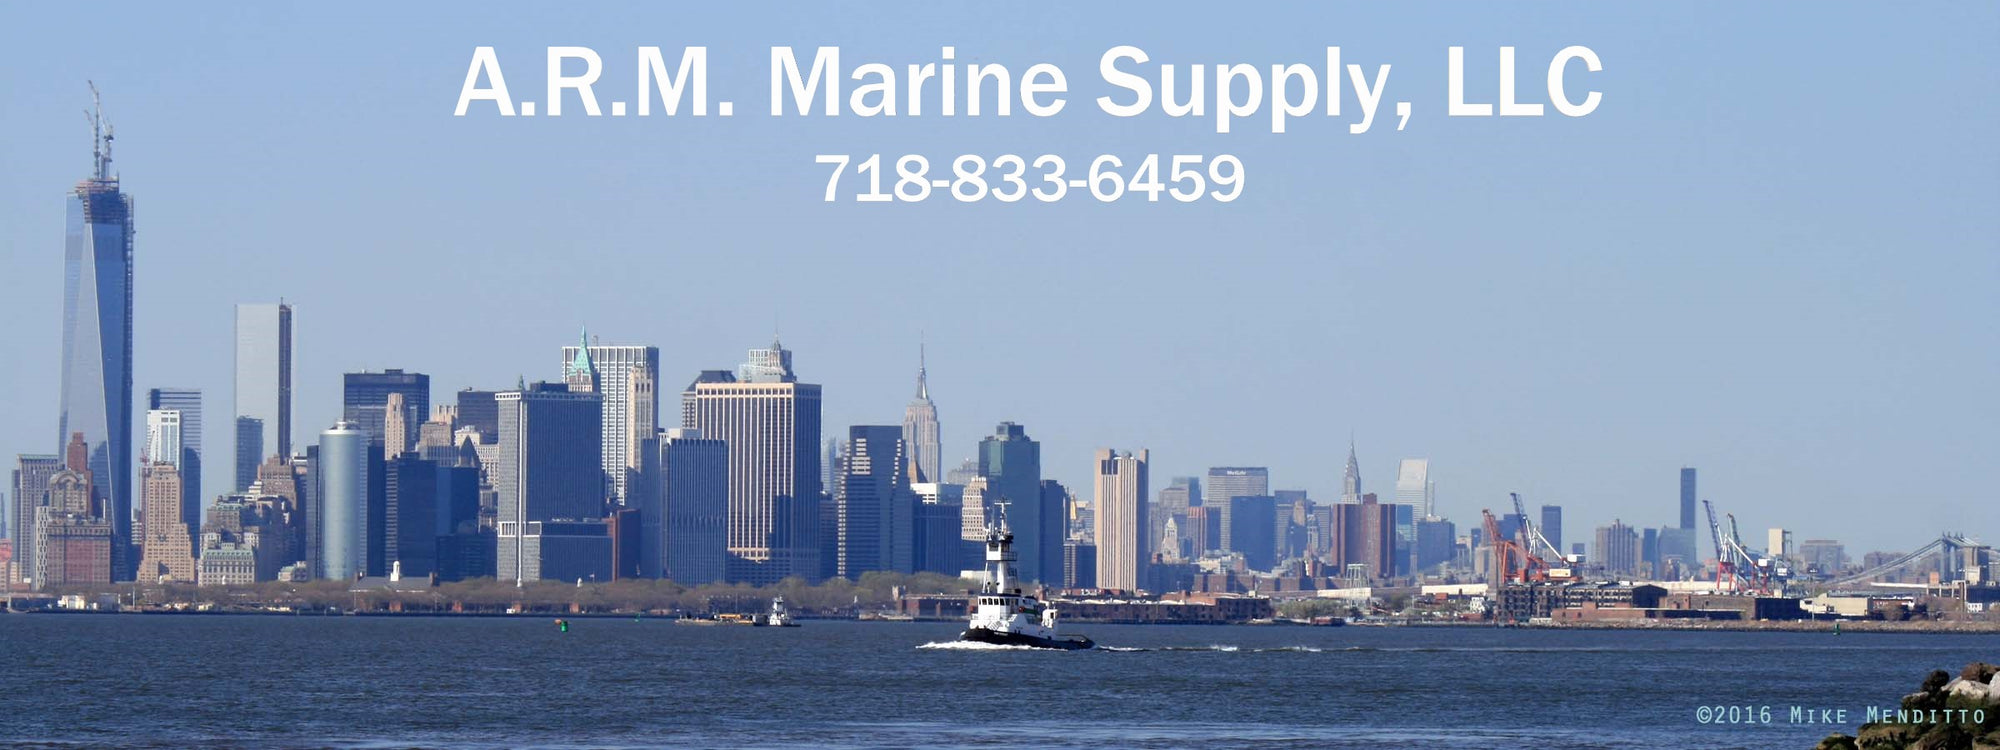 A.R.M. Marine Supply